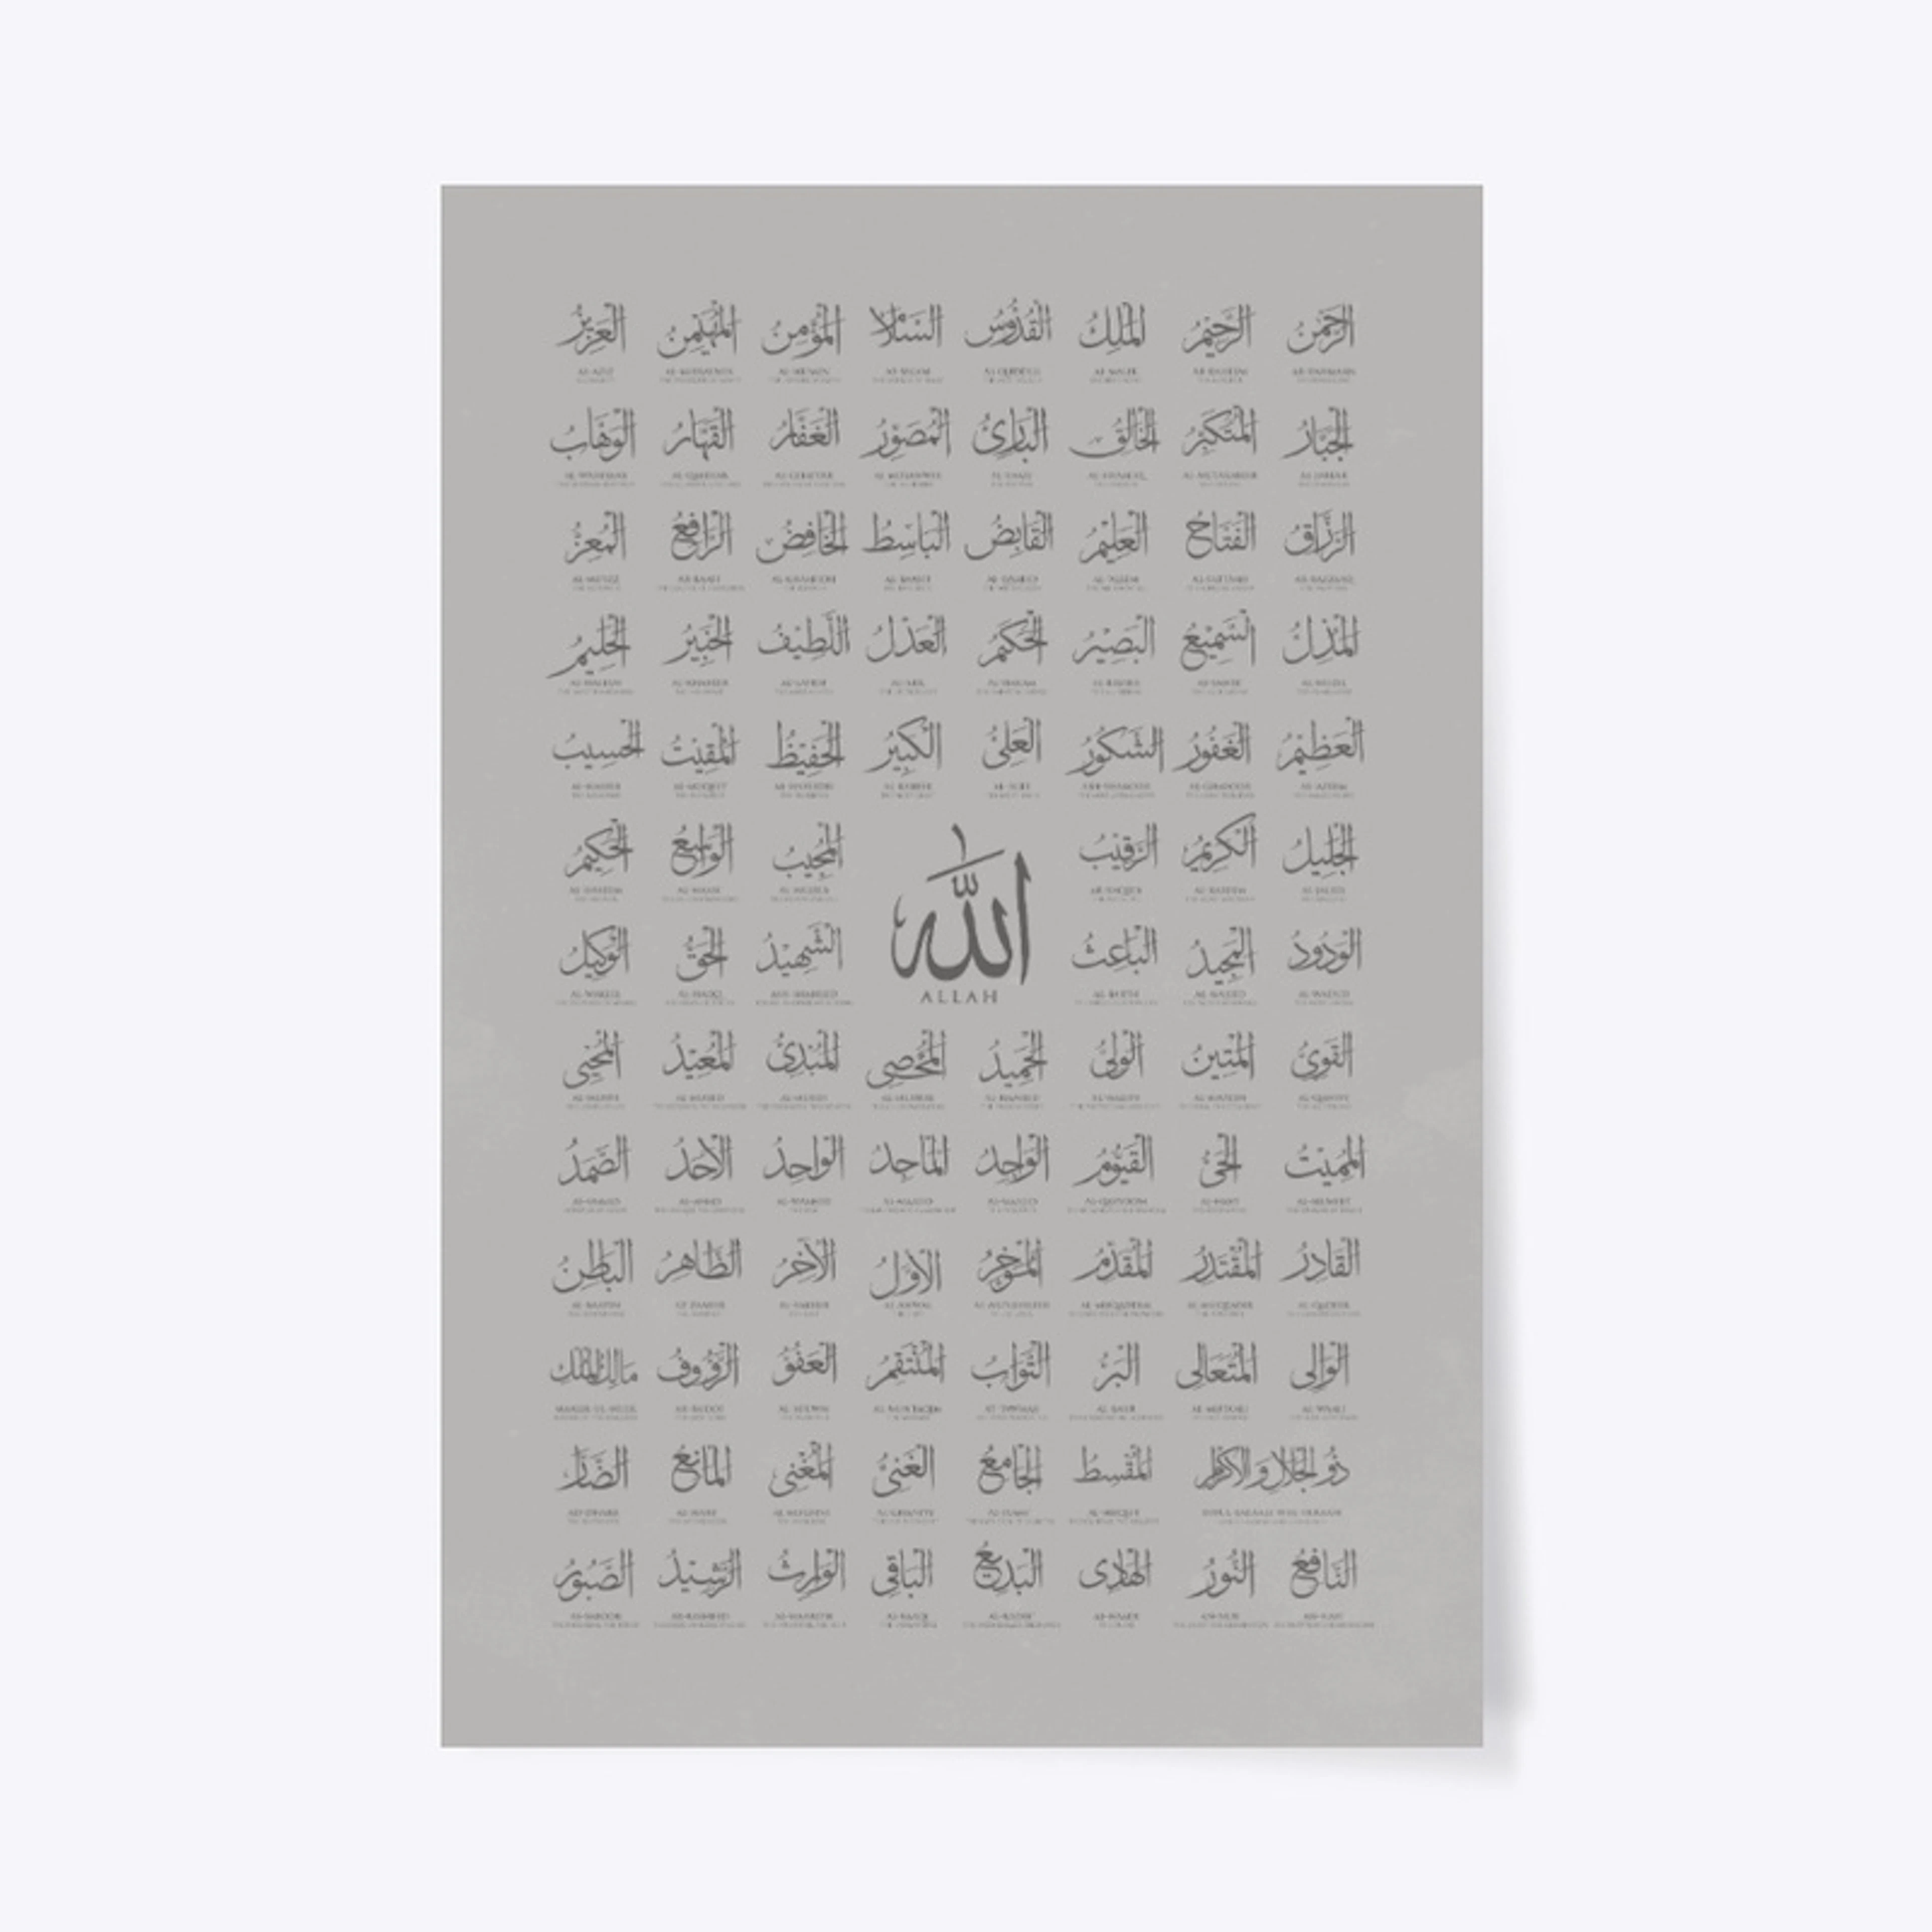 99 names of Allah 